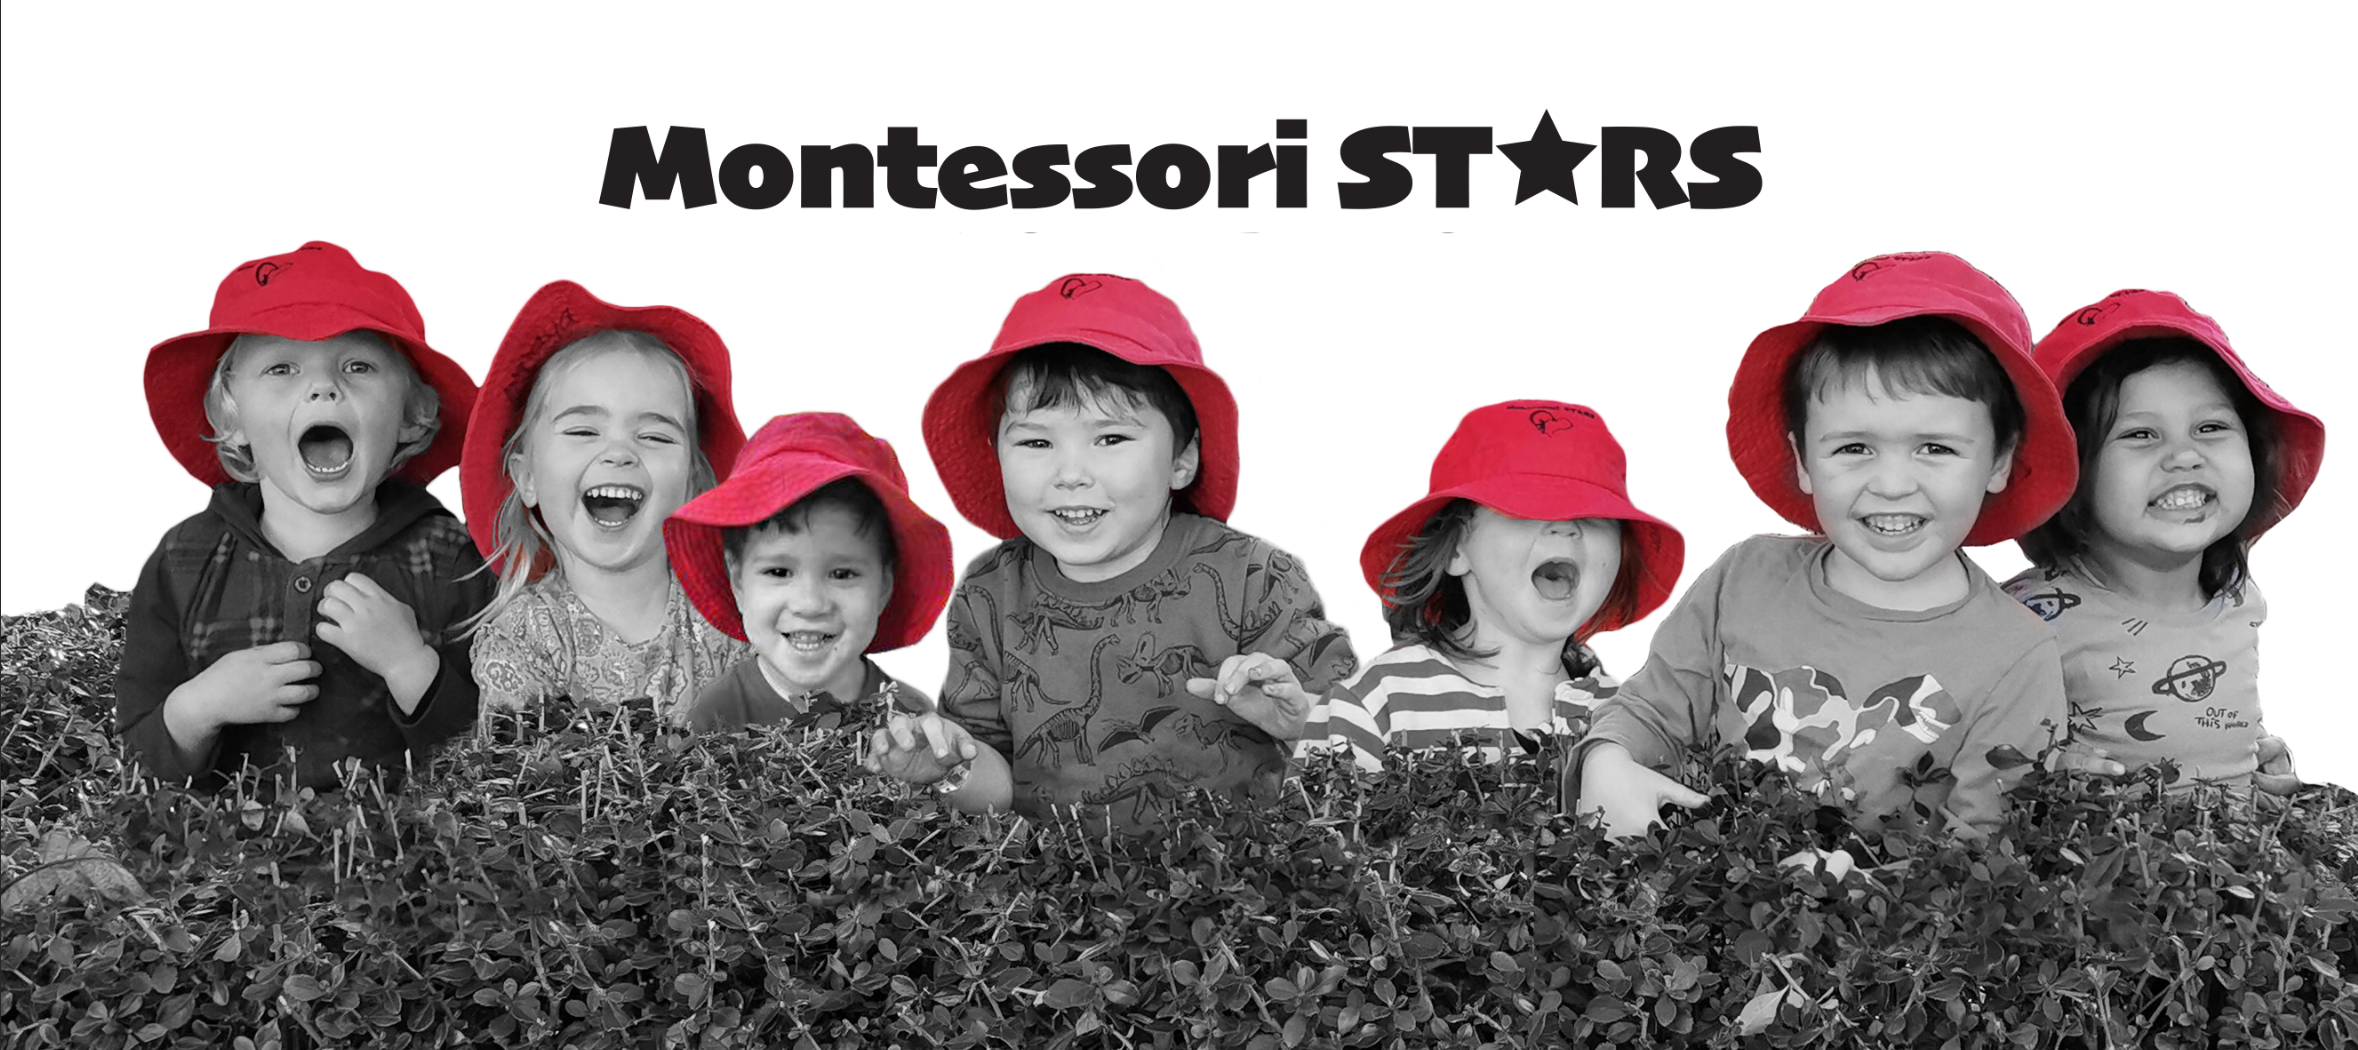 Montessori STARS Home